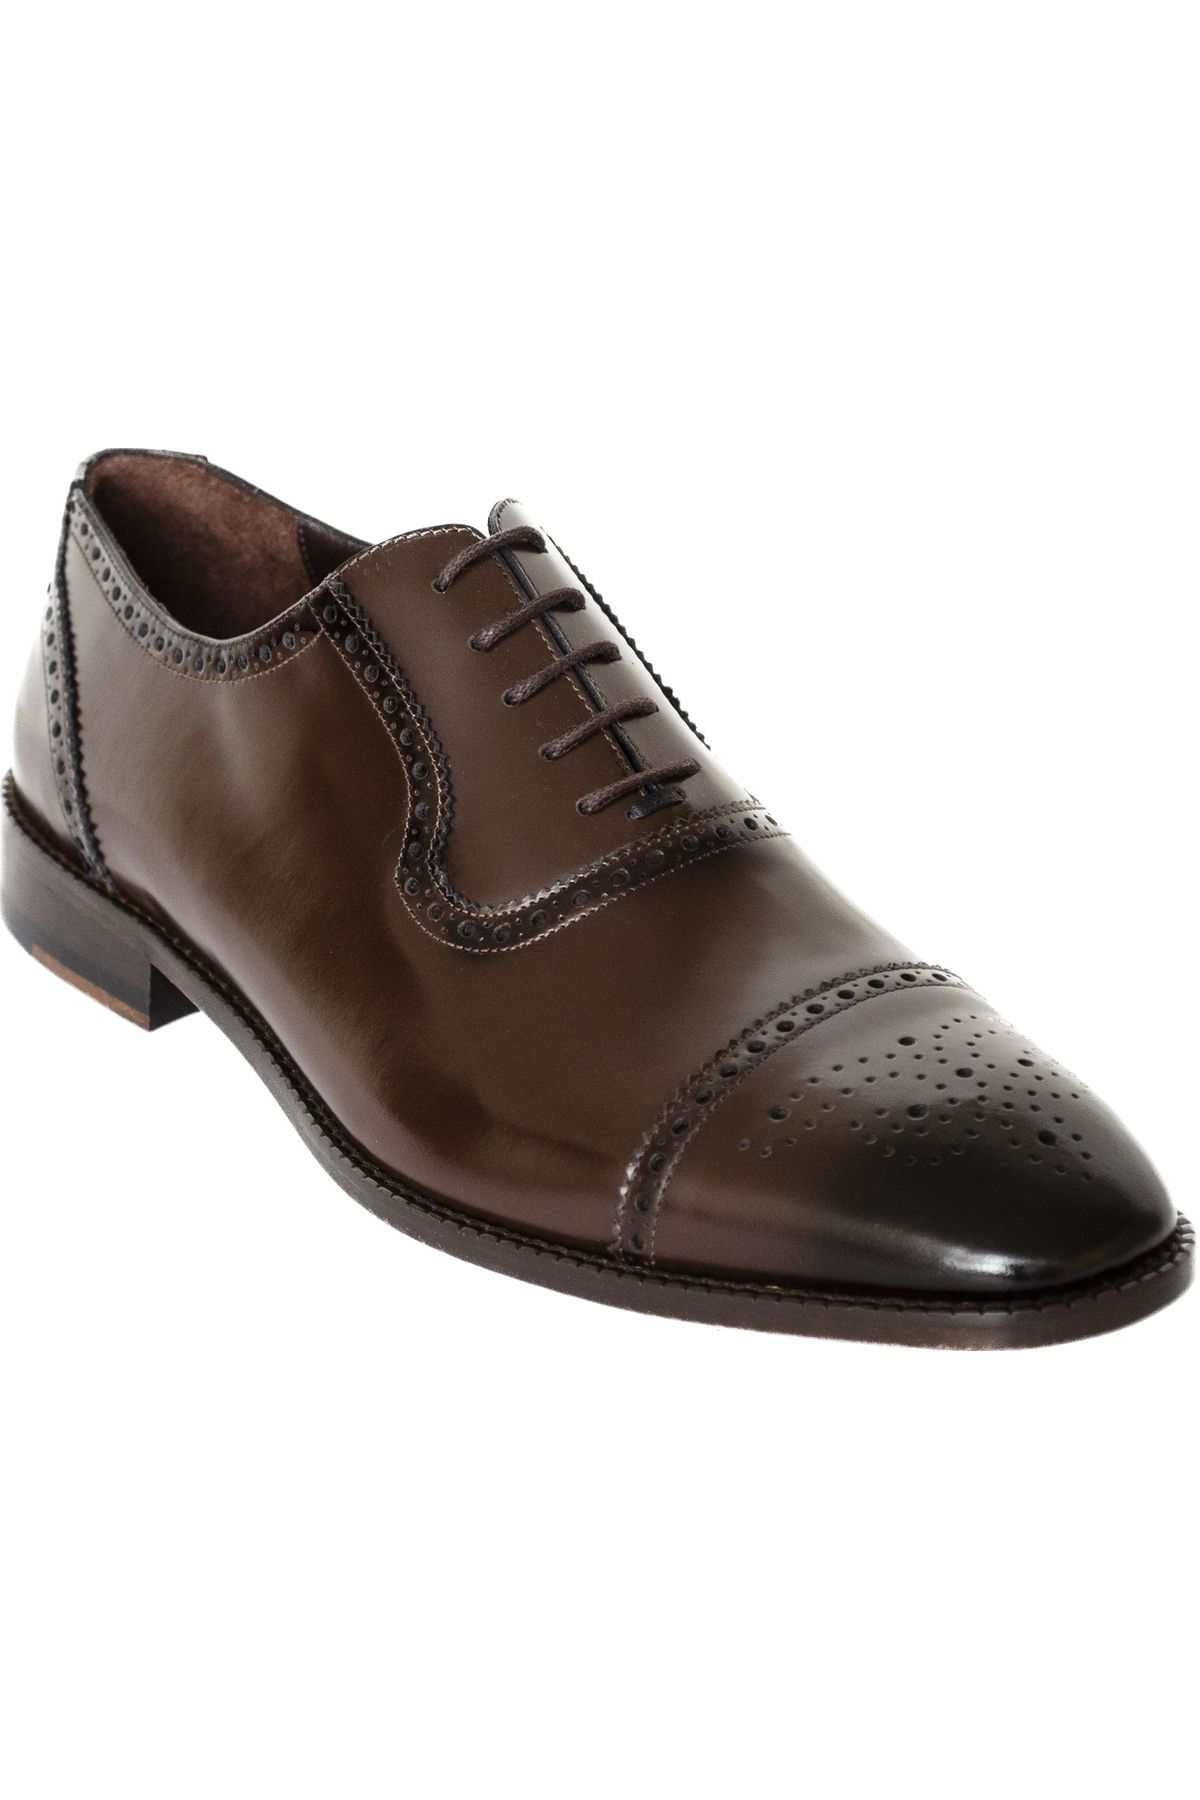 KMK Erkek Oxford Ayakkabı, Hakiki Dana Derisi, Bağcıklı Takım Elbise Ayakkabısı, Damat Ayakkabısı